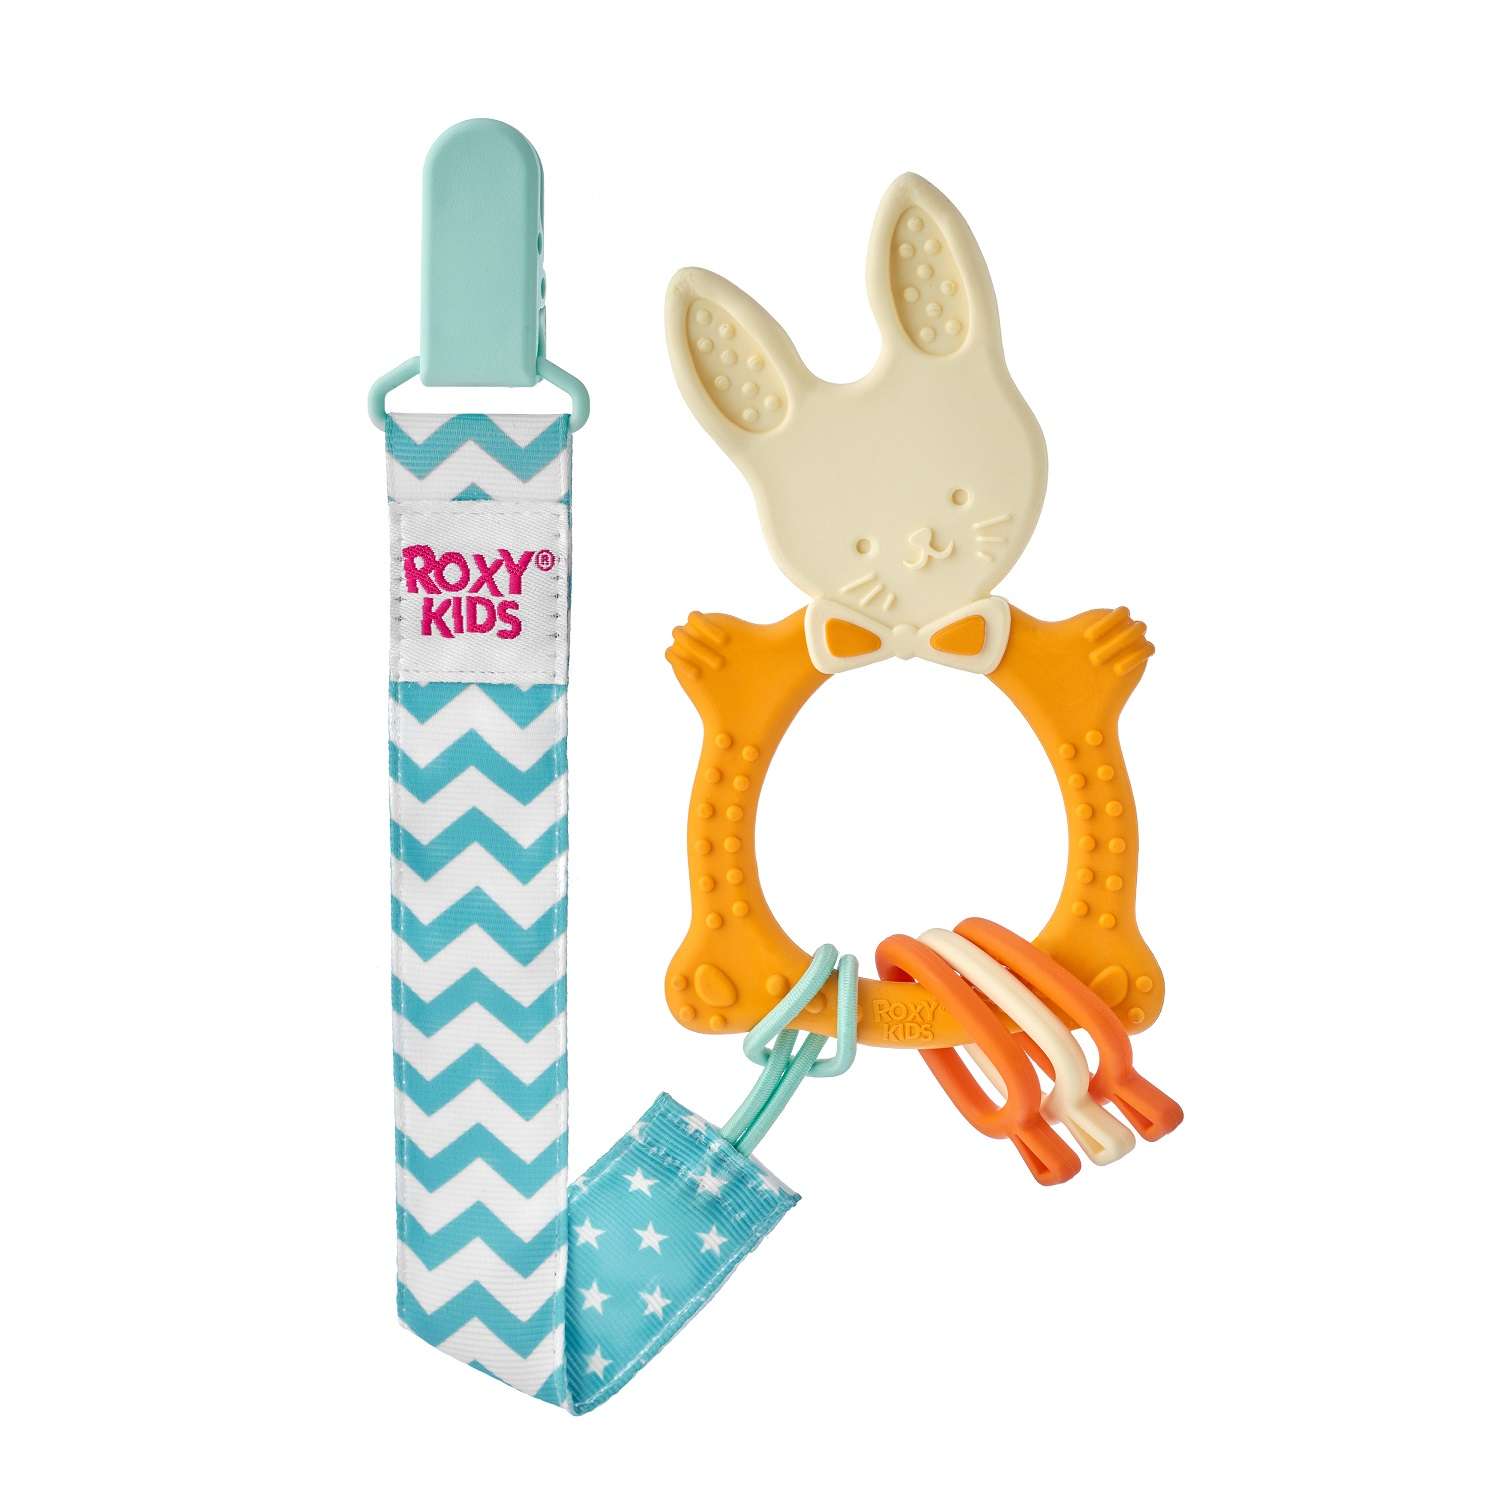 Прорезыватель ROXY-KIDS Bunny teether универсальный на держателе цвет горчичный - фото 2